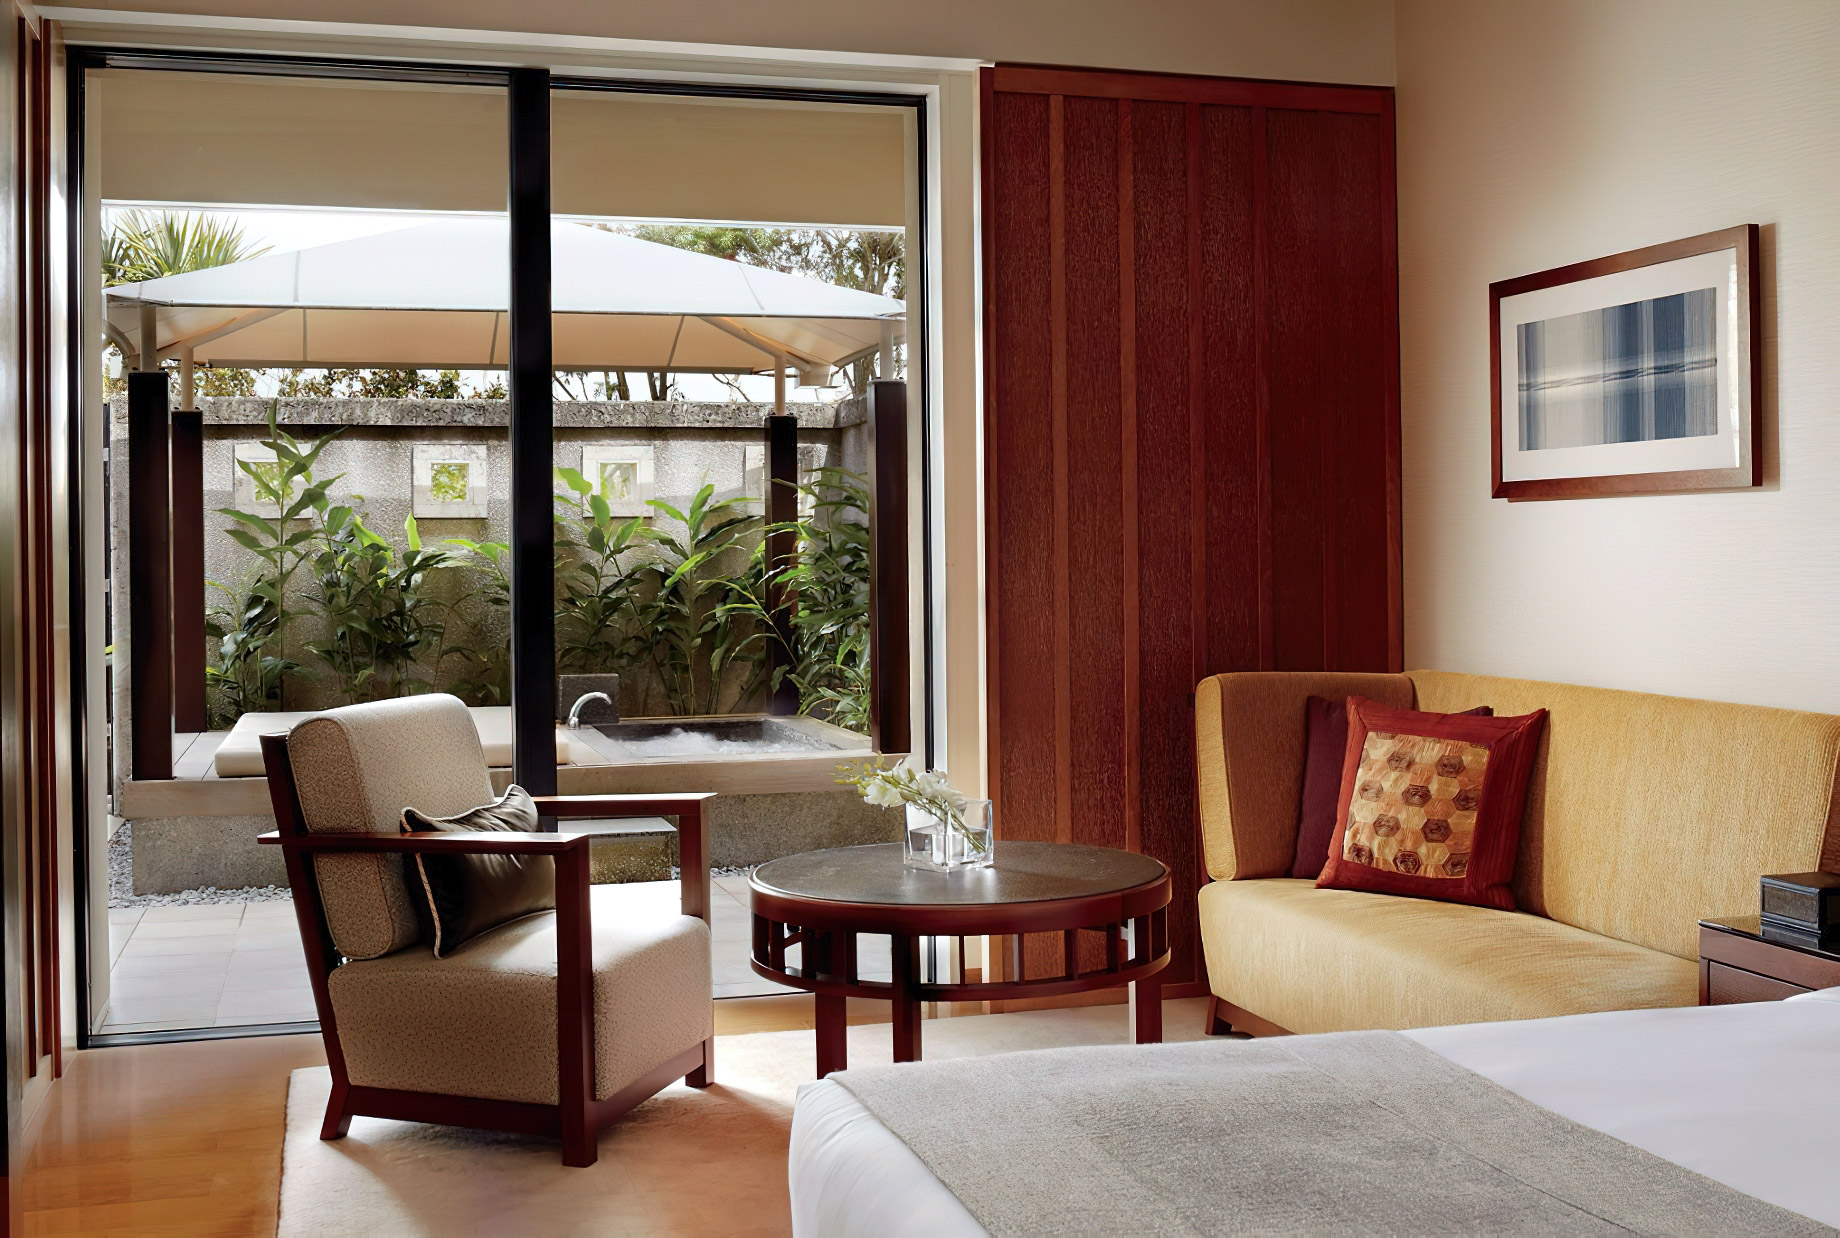 The Ritz-Carlton, Okinawa Hotel – Okinawa, Japan – Cabana Room View